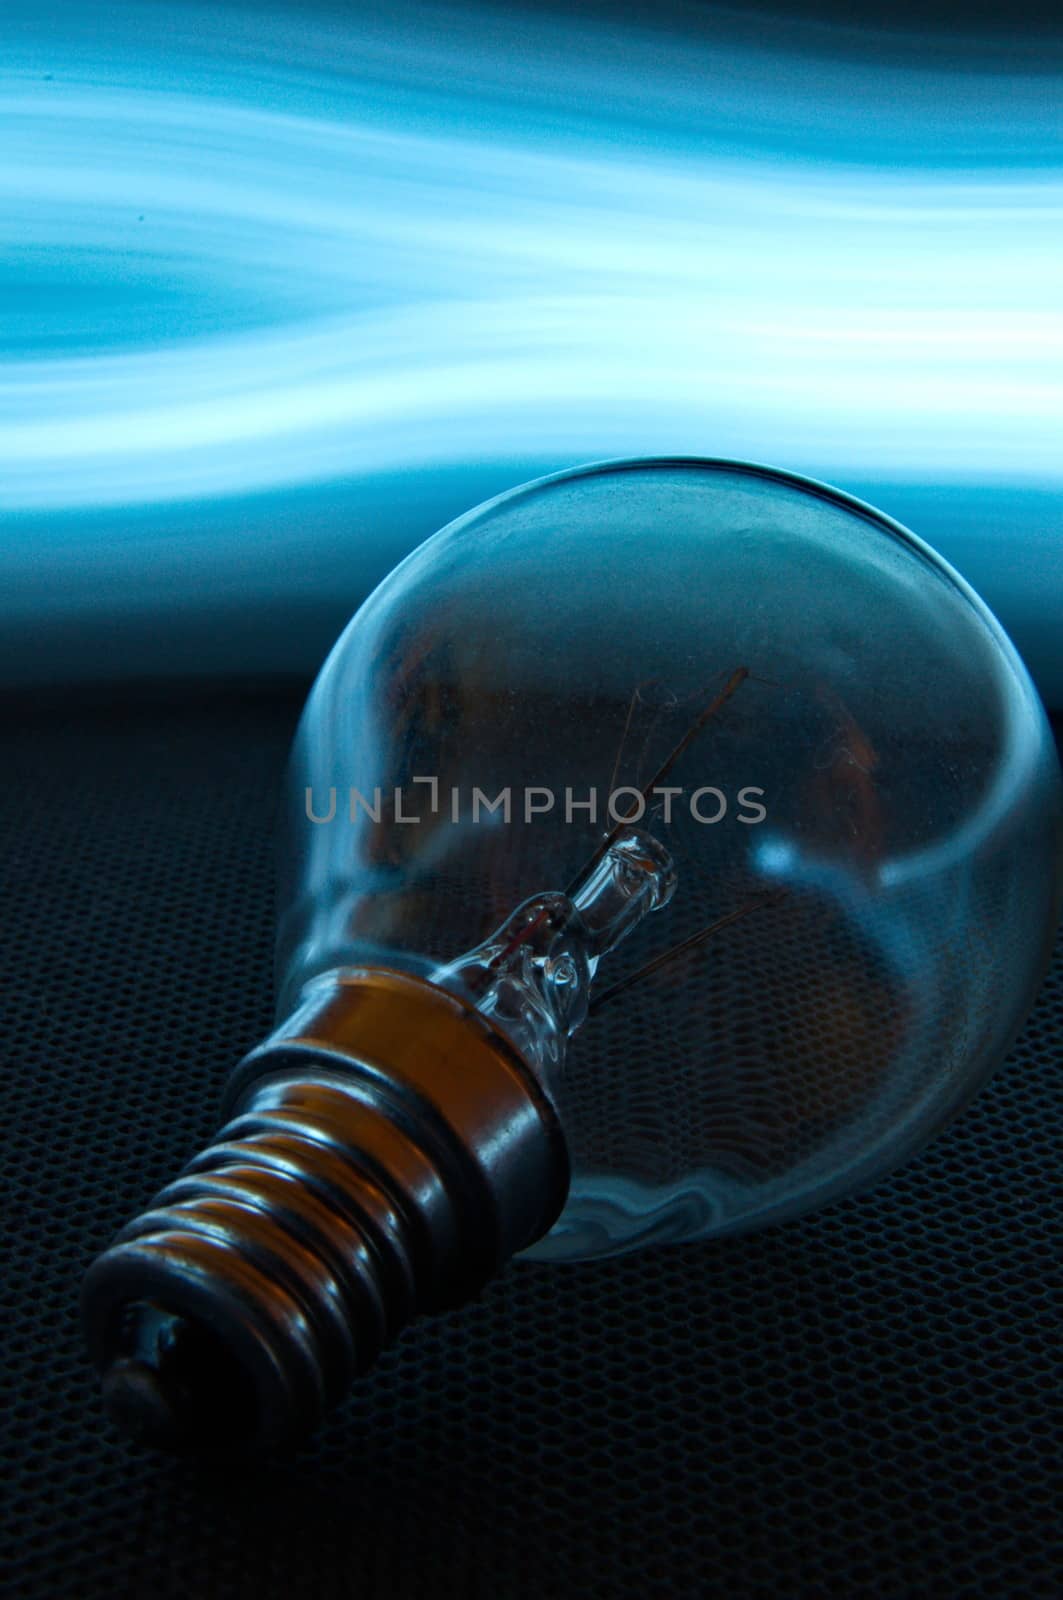 Lightbulb wiht enlighted background